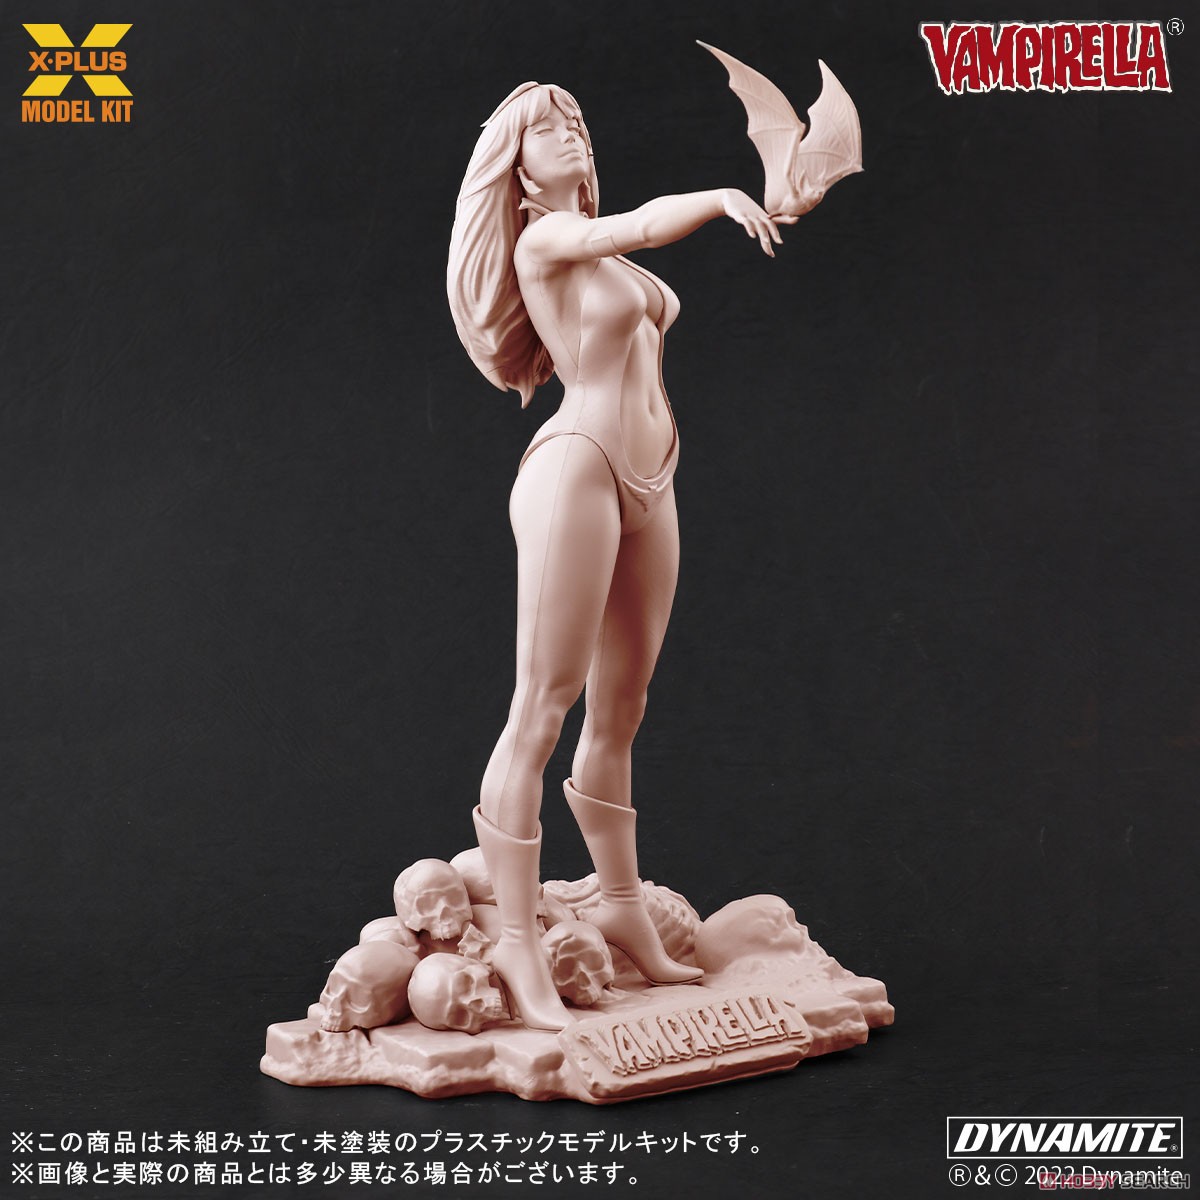 Vampirella『ヴァンピレラ ホセ・ゴンザレス エディション 』1/8スケール プラスチック モデルキット-011